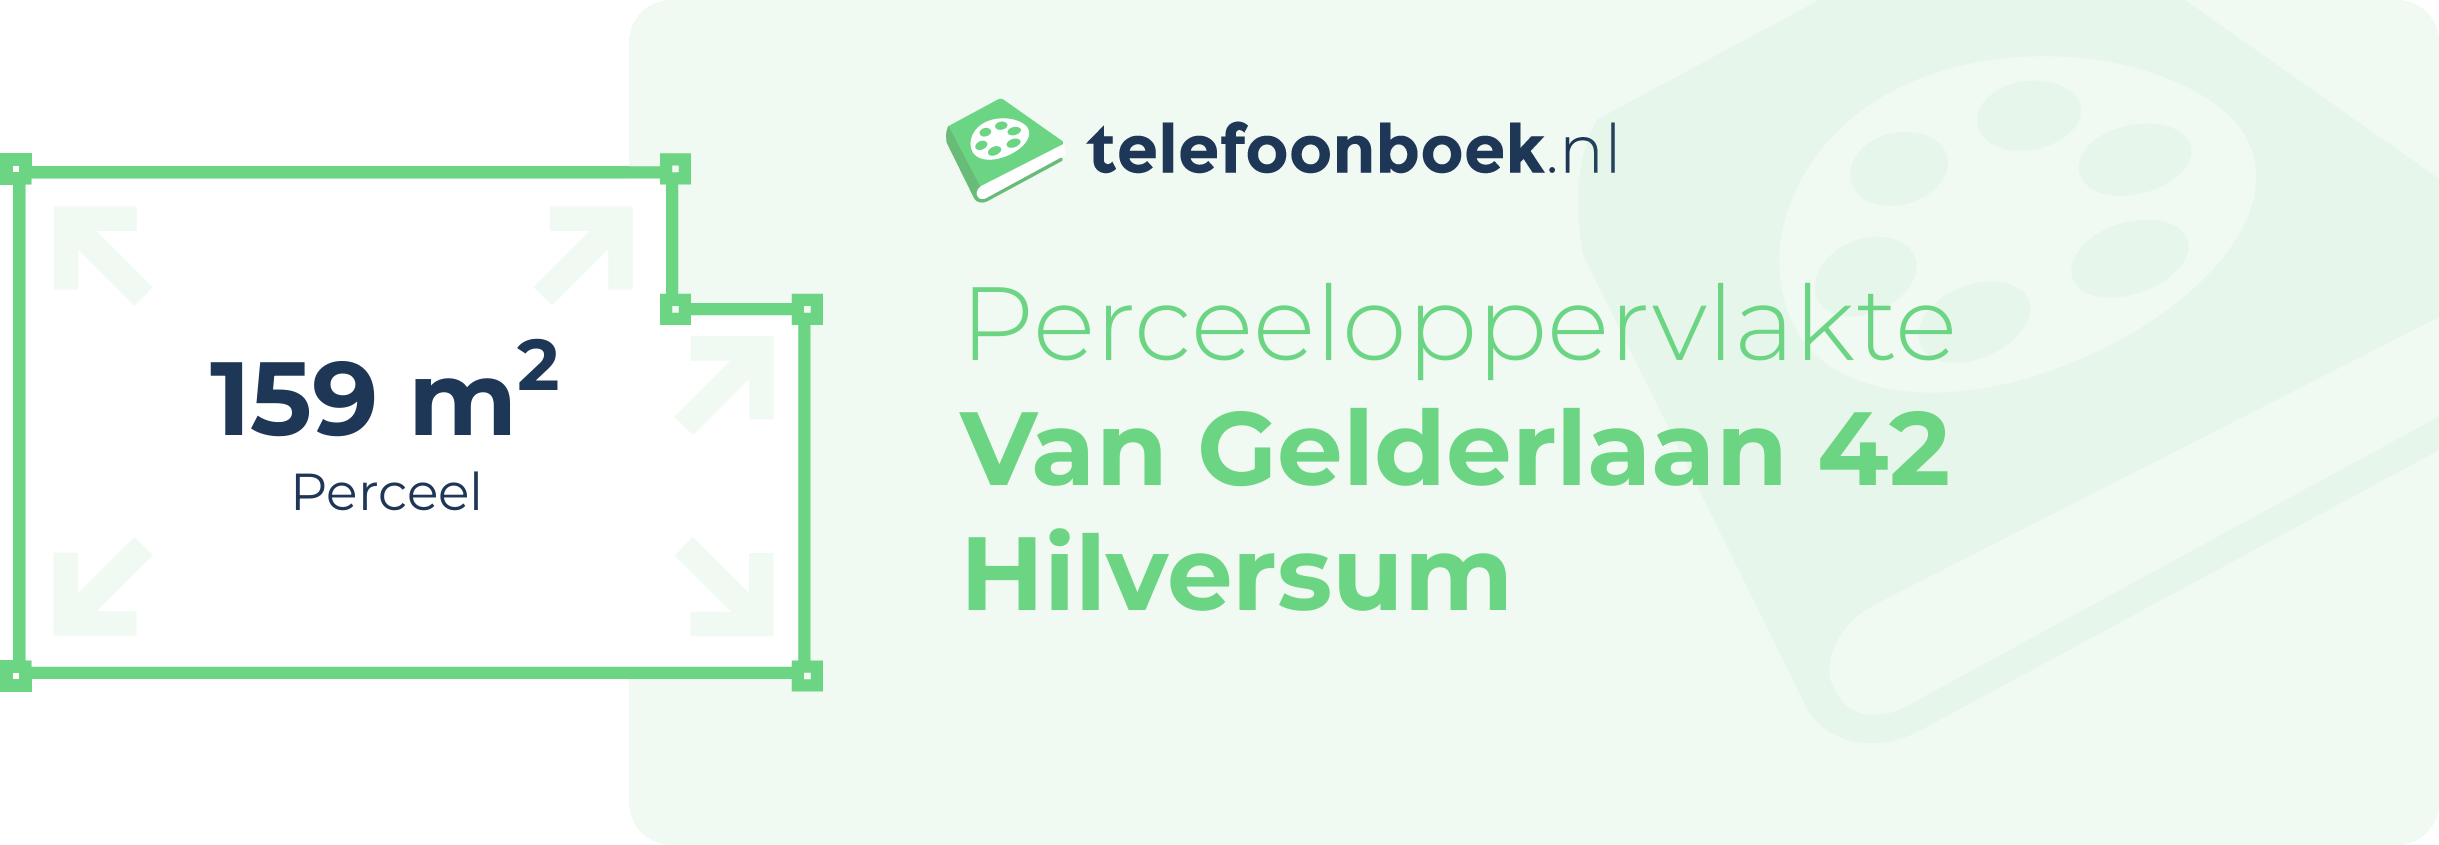 Perceeloppervlakte Van Gelderlaan 42 Hilversum